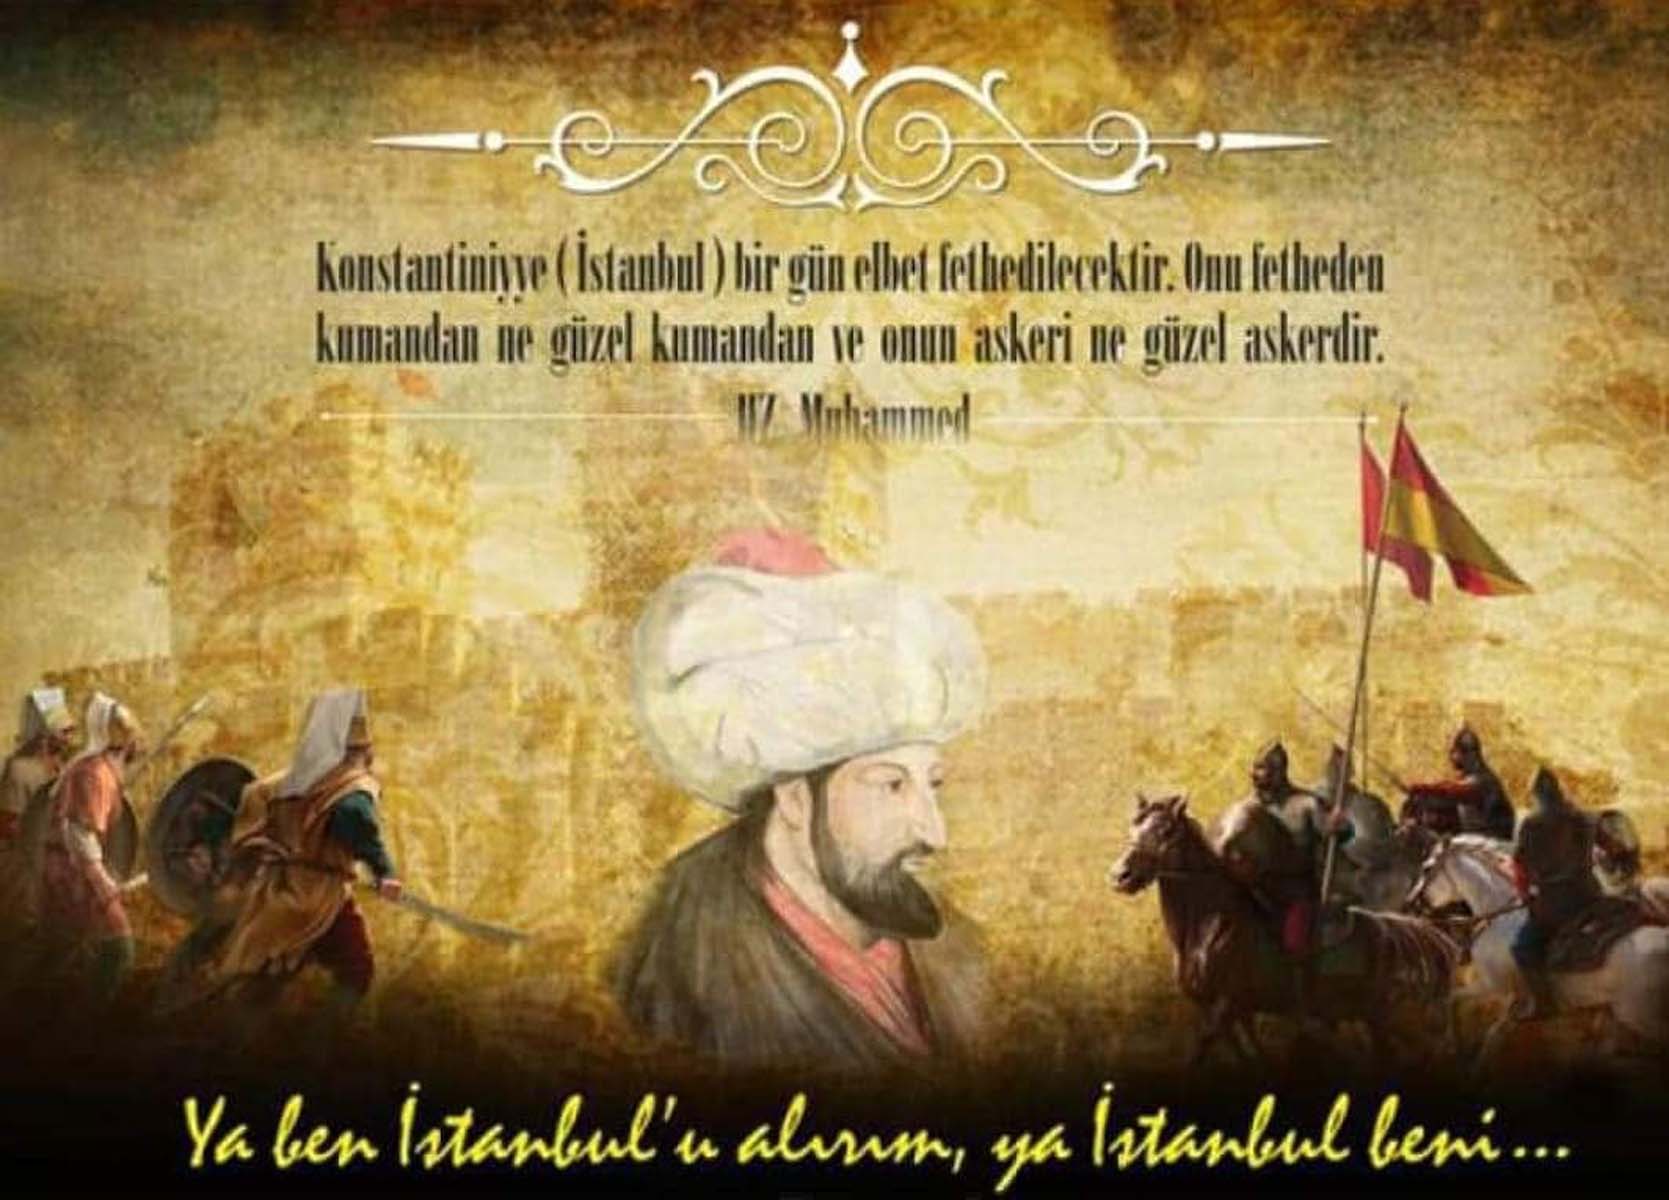 1453 İstanbul'un fethi ile ilgili sözler, mesajlar 2022 | İstanbul'un fethinin 569.yıldönümü ile ilgili resimli mesajlar 